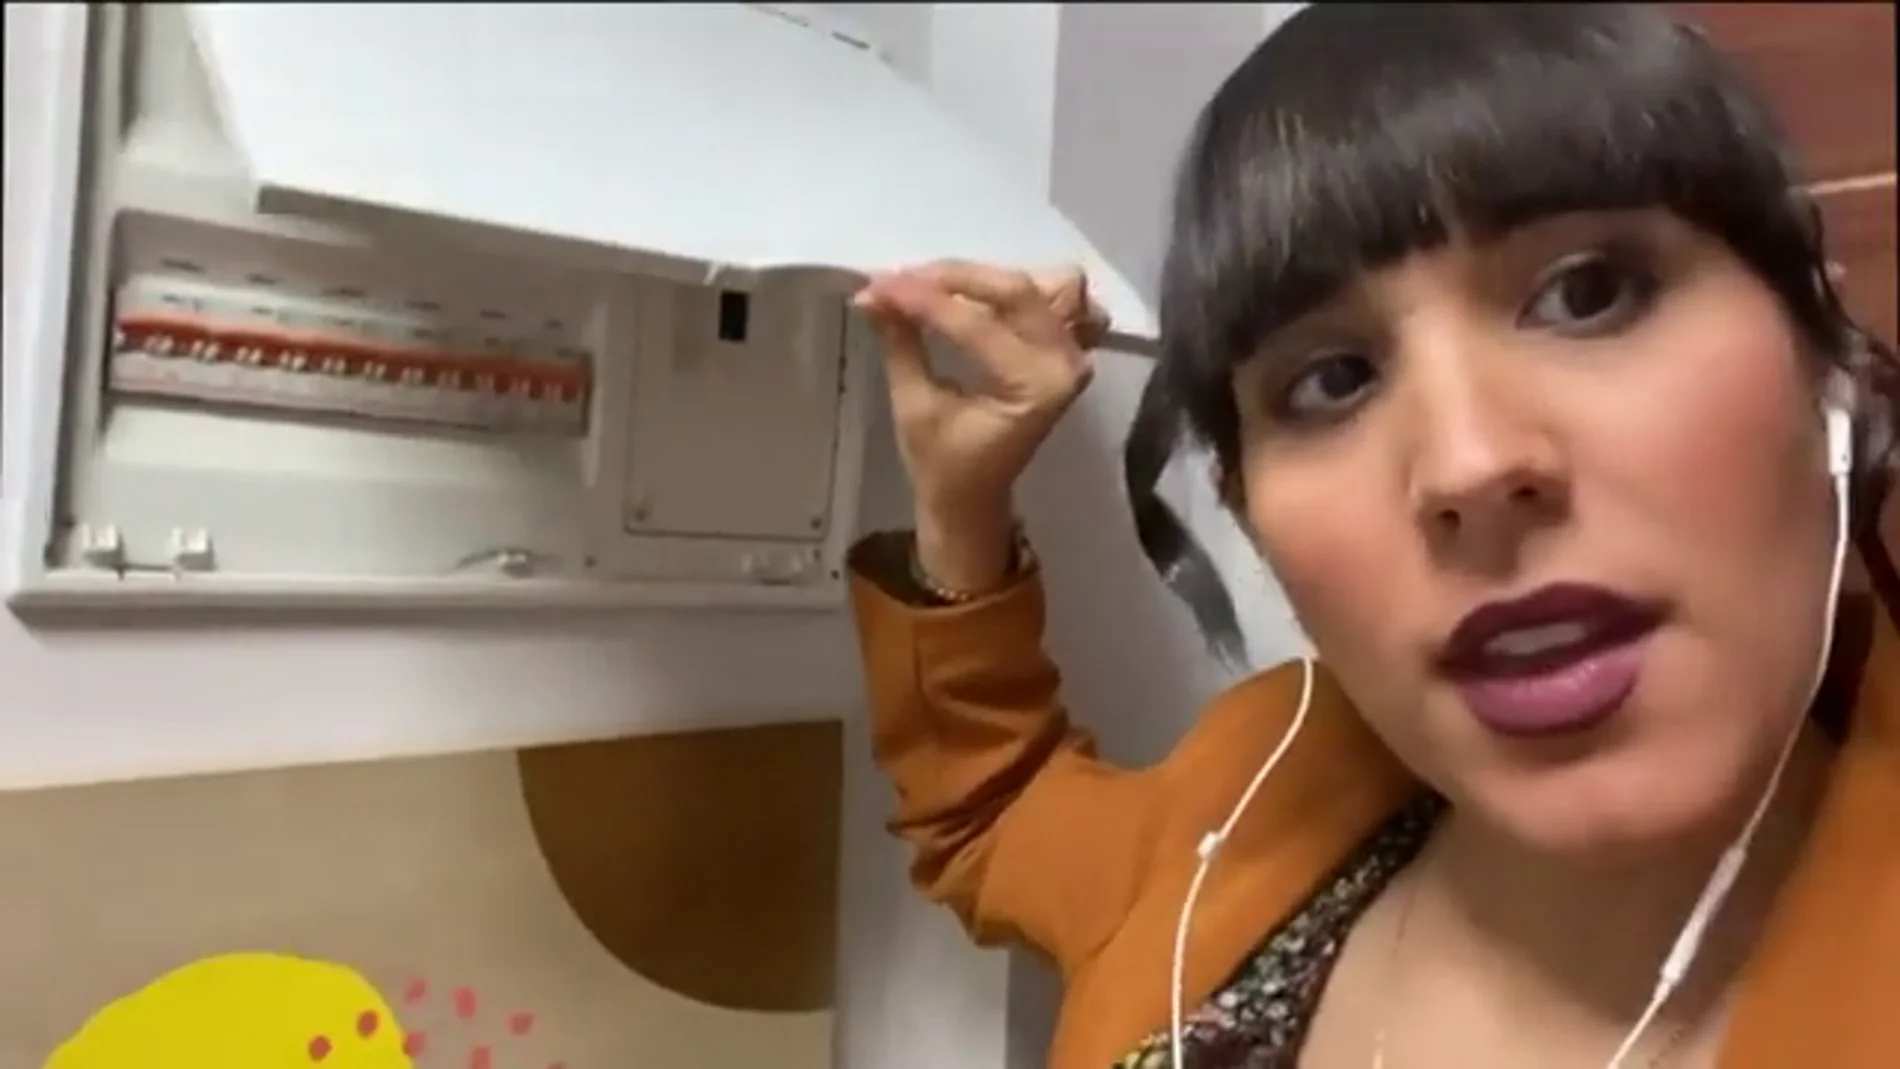 Sara Muñoz nos enseña a ahorrar evitando el consumo silencioso de nuestros electrodomésticos